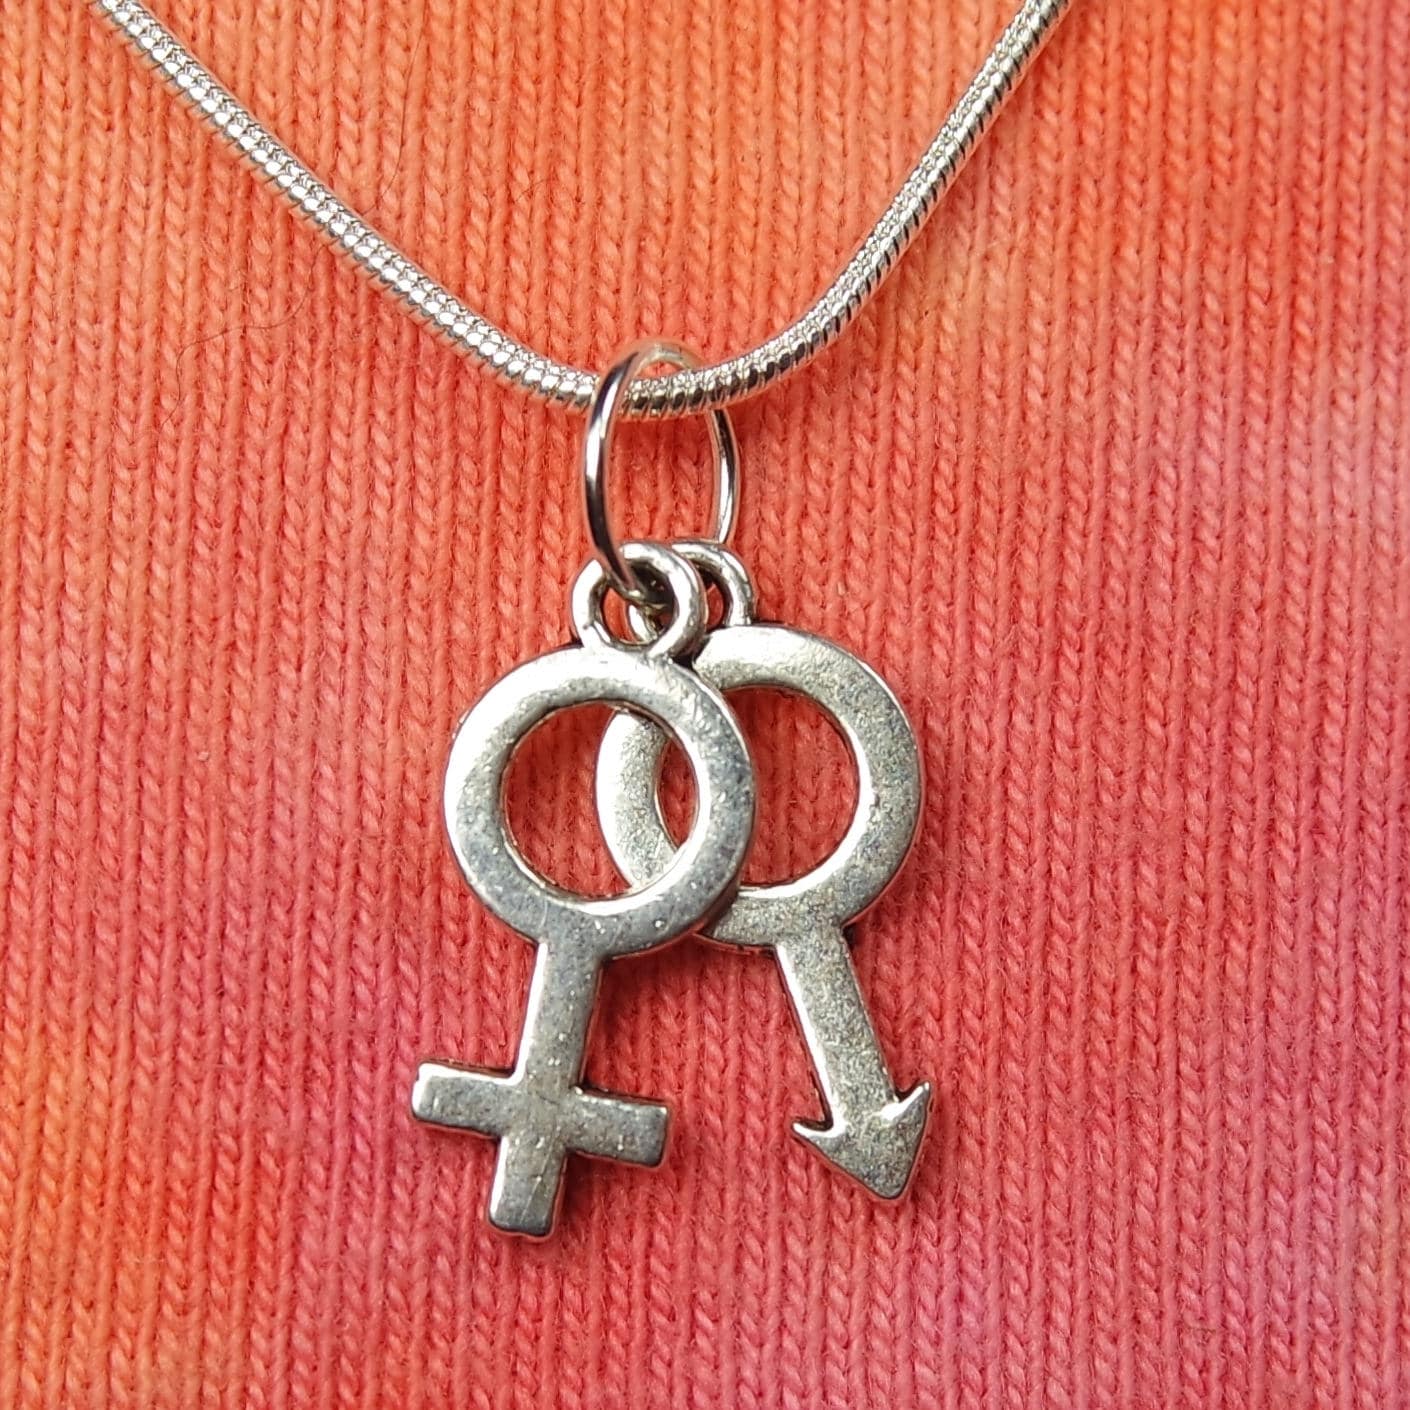 Planet Symbol Amulet Magic Charm Necklace Planetary Alchemical Symbols Sign  New | eBay